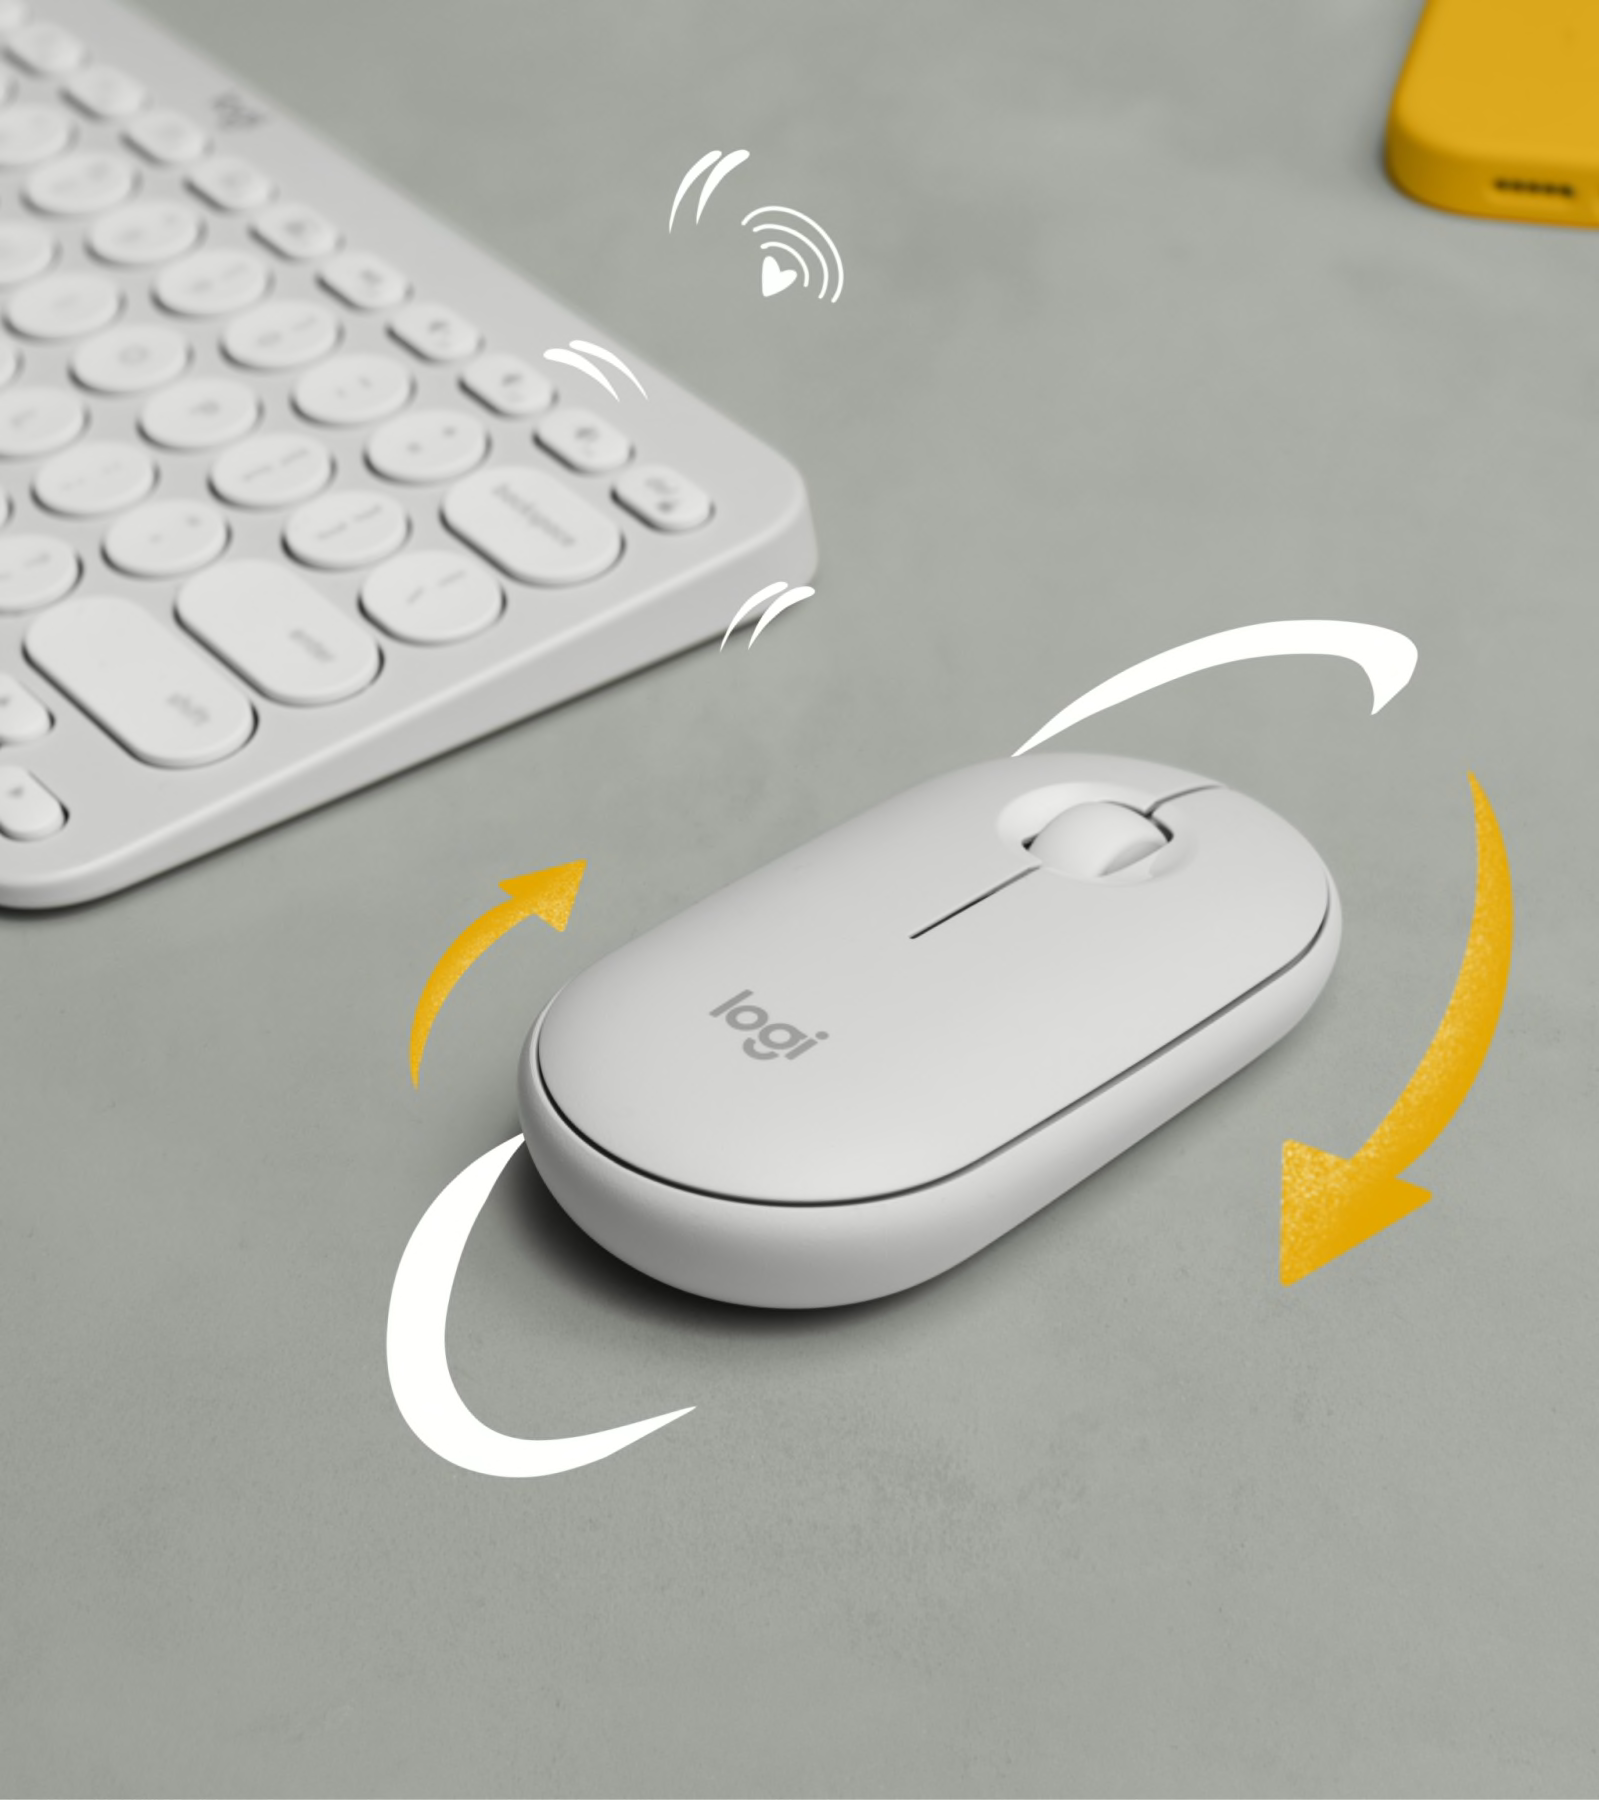 Souris Logitech Pebble Mouse 2 M350s souris fine sans fil Bluetooth,  portable, légère - Graphite - 910-007015